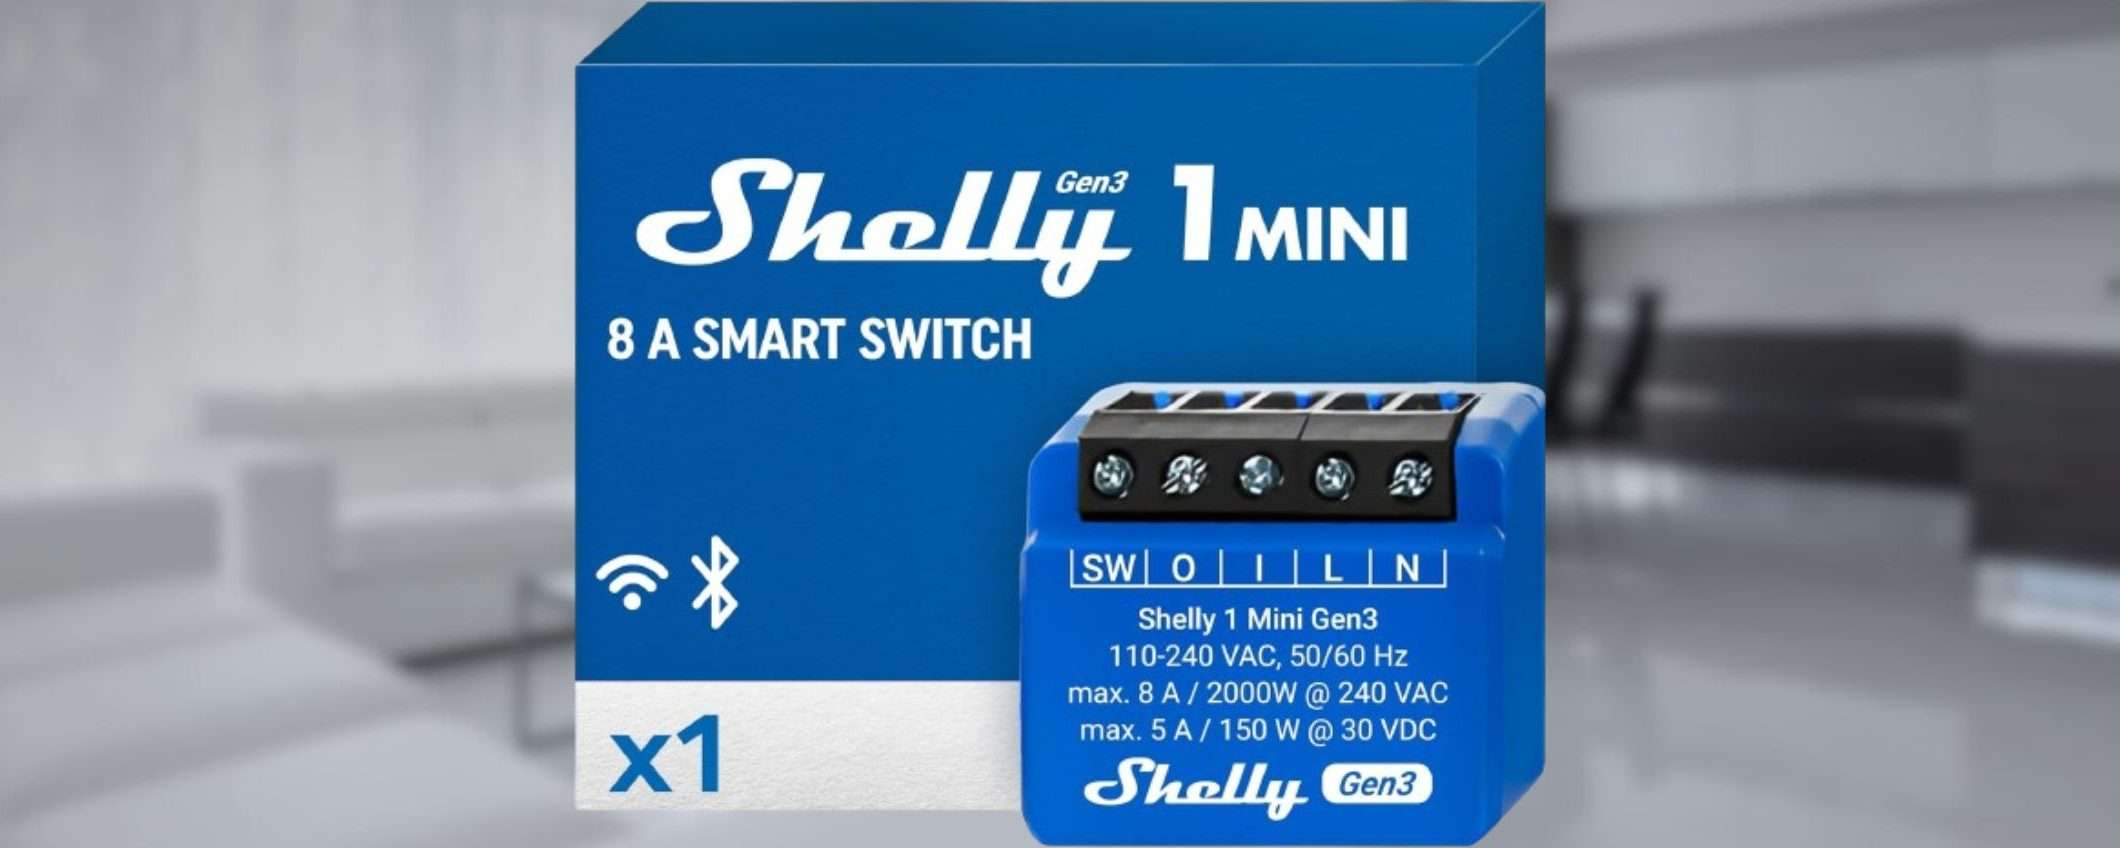 Sconto 50% per l'interruttore SMART di Shelly: a 9,99€ è DA AVERE (Amazon)